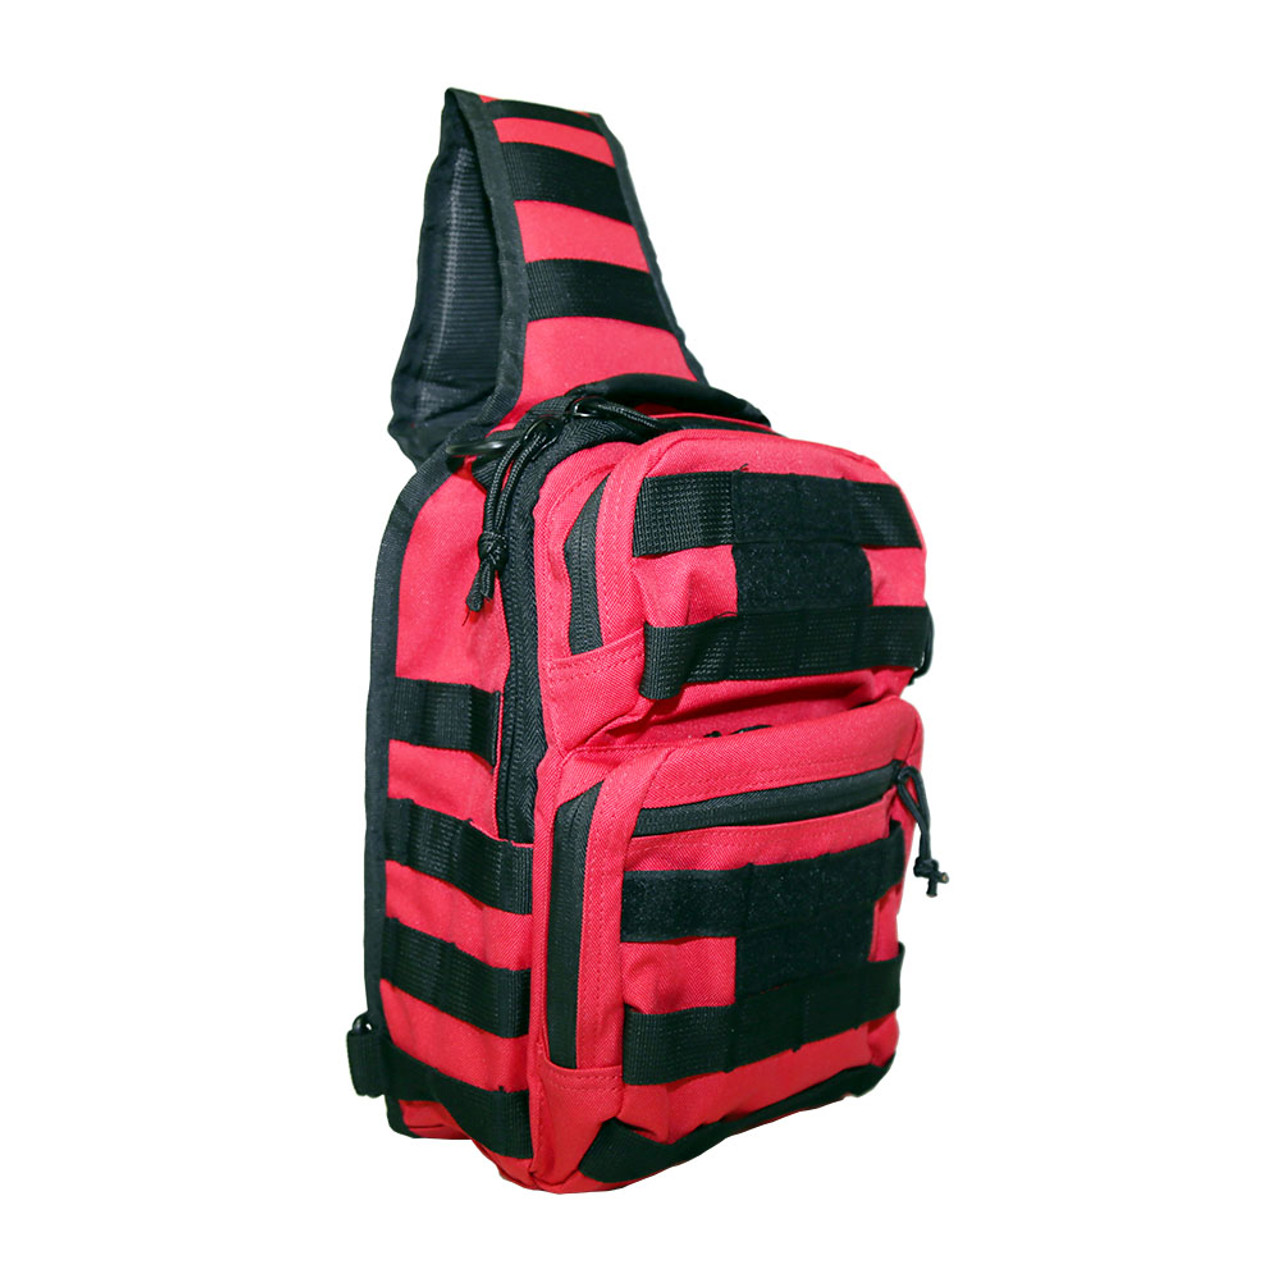 NcStar CVSUB3025R Tactical Sling Chest Pack Shoulder Bag Outdoor Hiking Travel Backpack